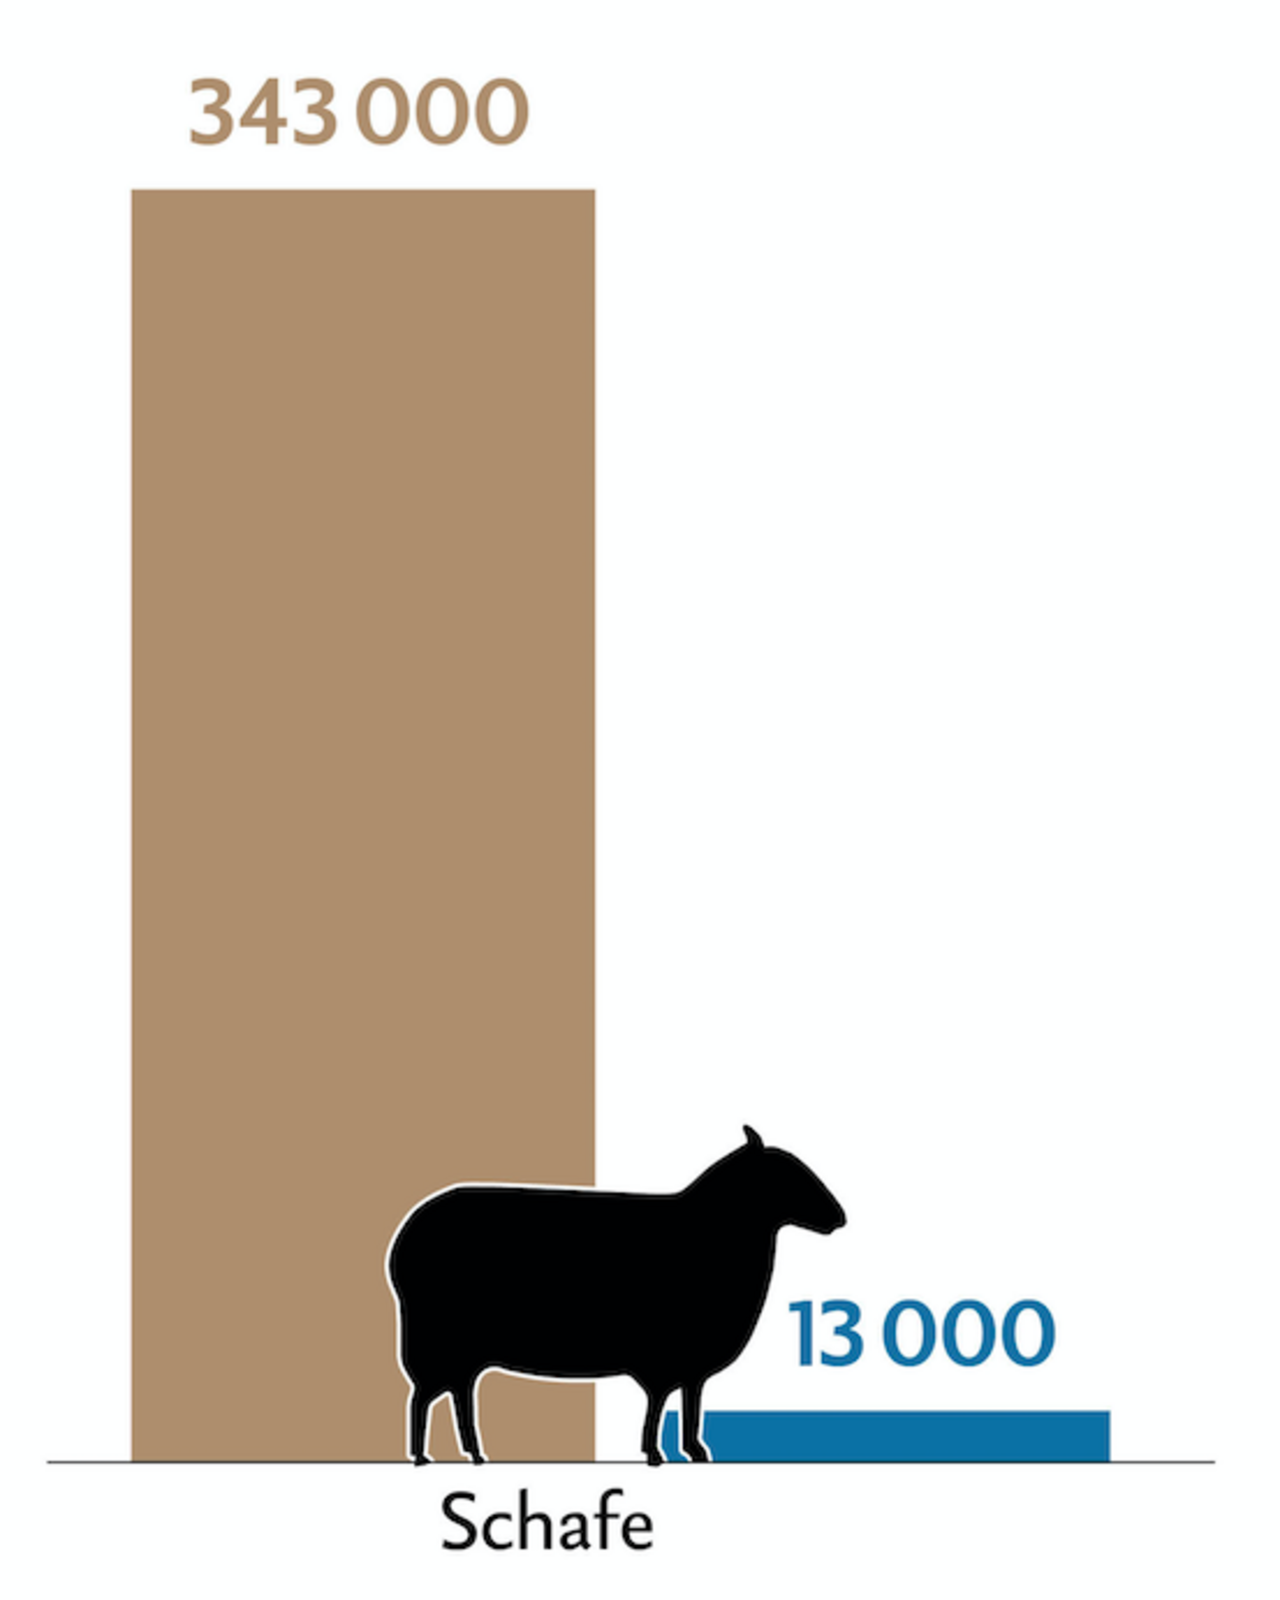 Balkendiagramm zeigt die Tierzahlen (braun) und Behandlungszahlen (blau) der Schafe in der Schweiz.